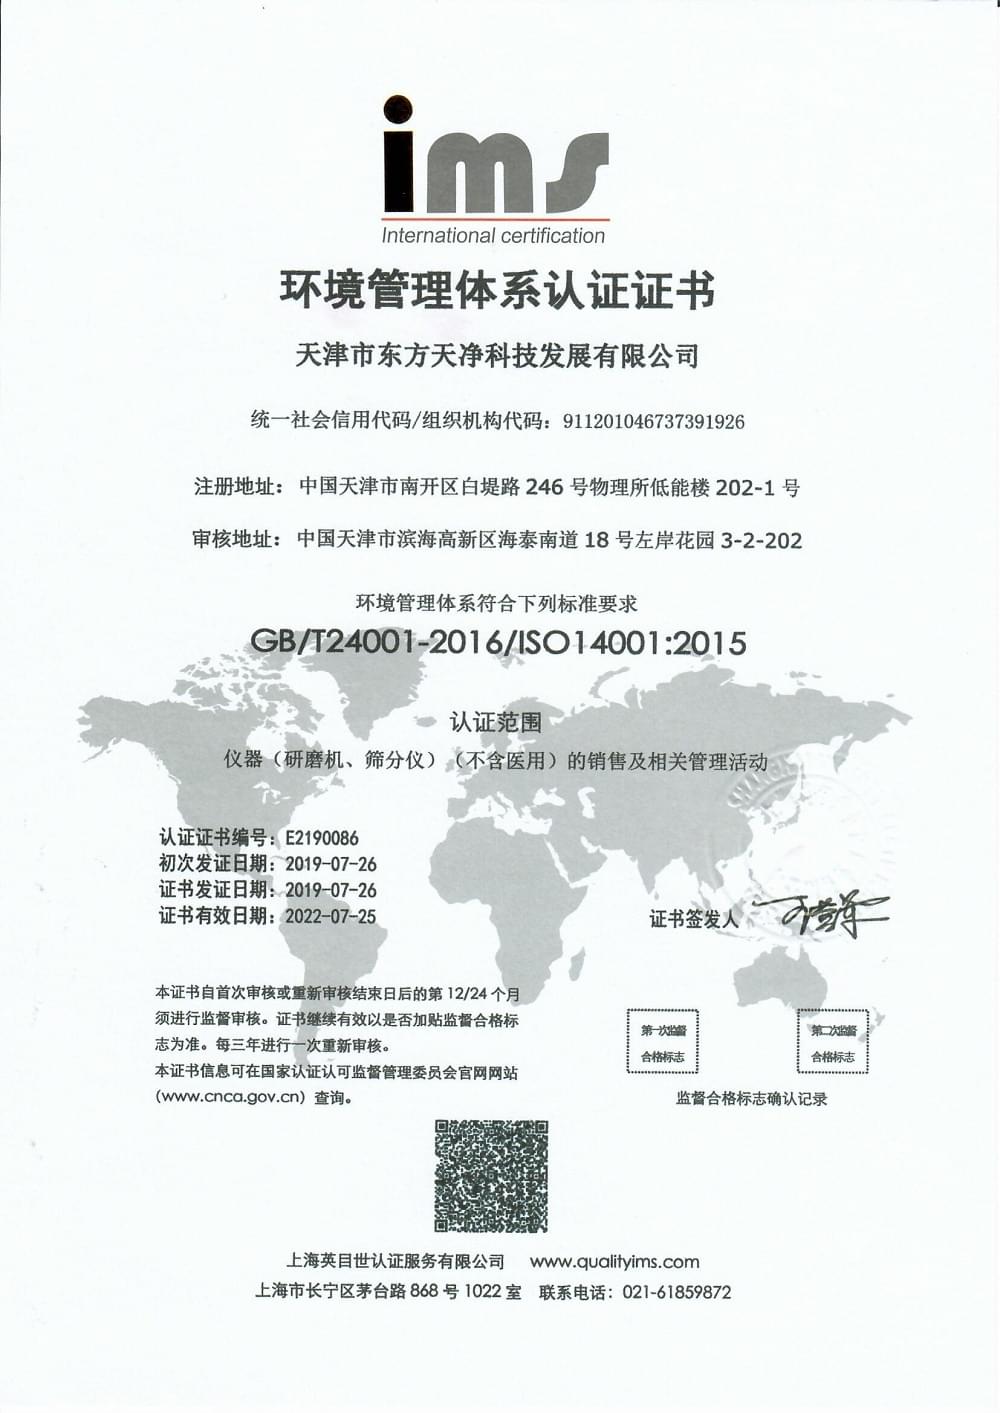 東方天凈產品ISO 14001環境管理體系認證